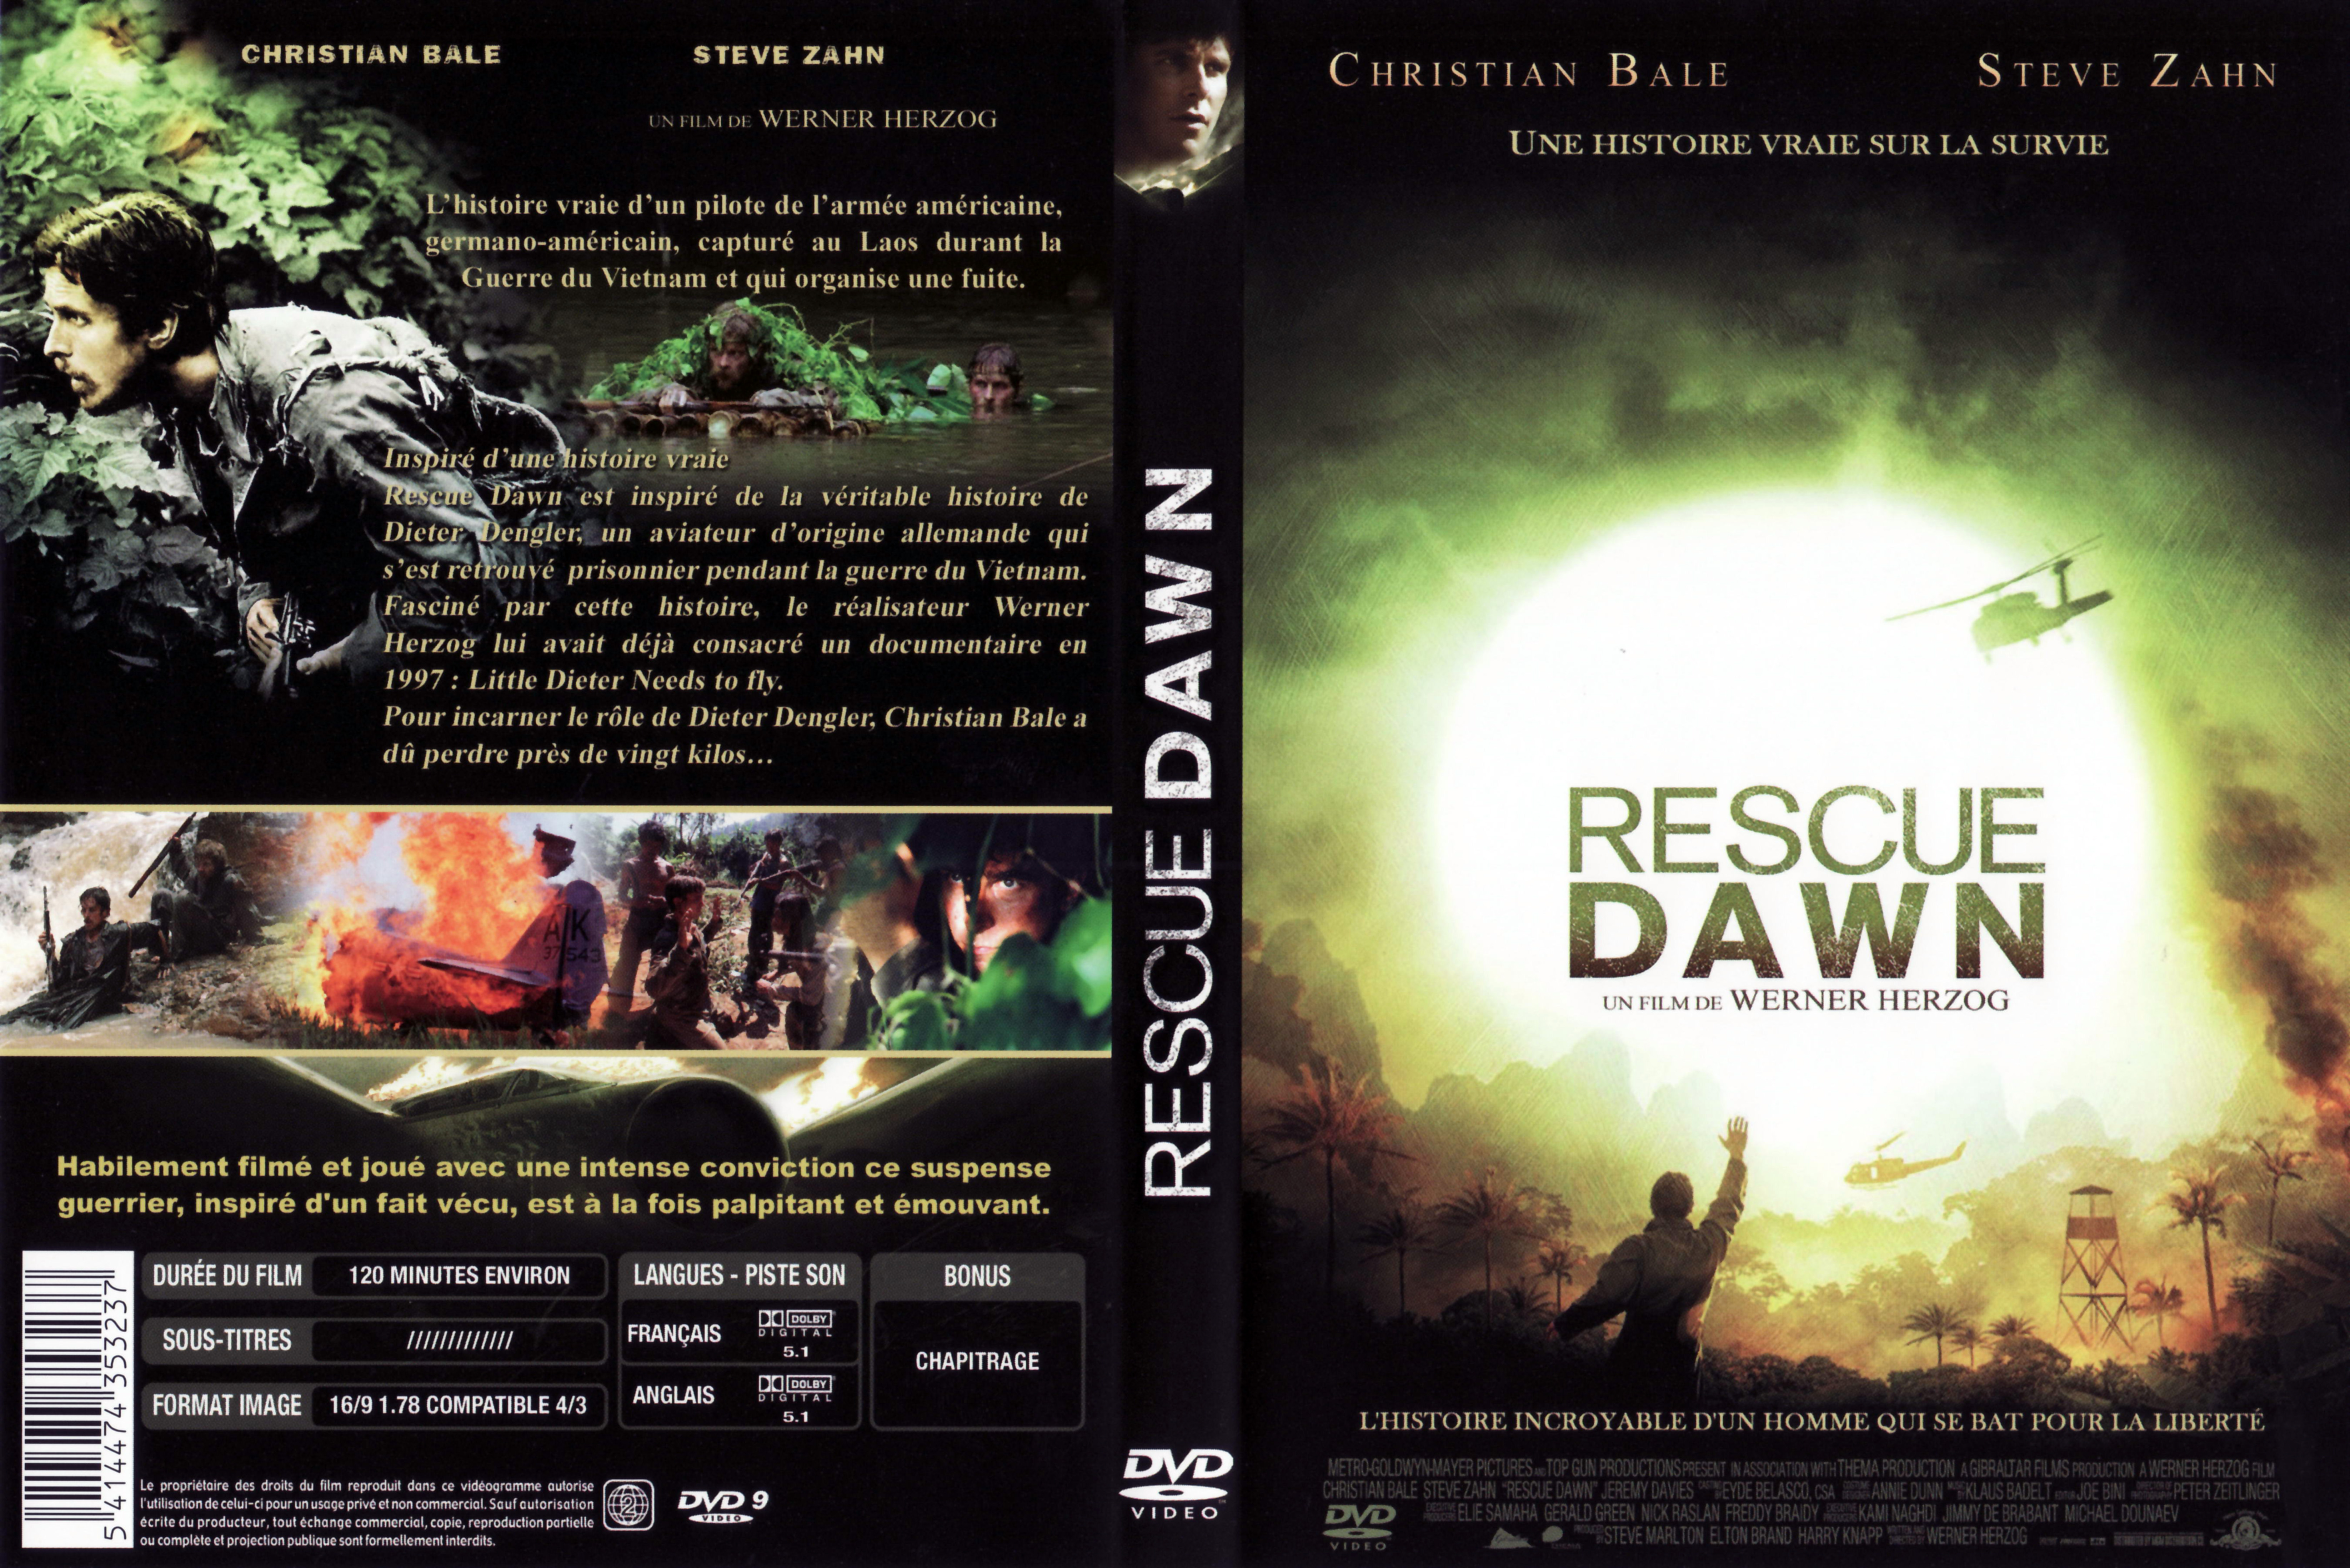 Jaquette DVD Rescue dawn v2